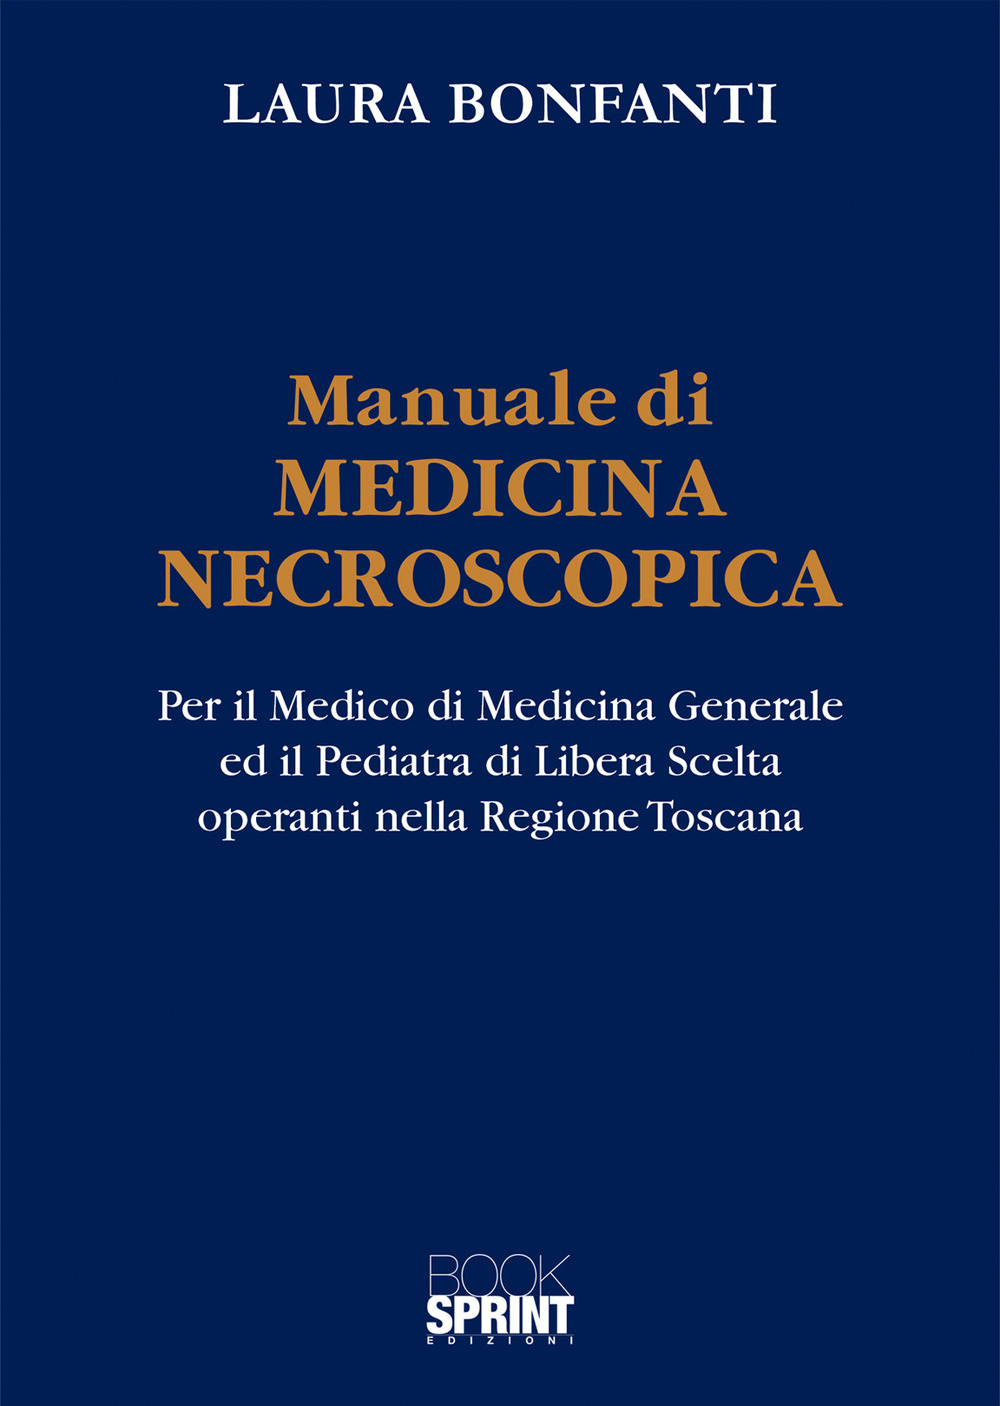 Image of Manuale di medicina necroscopica